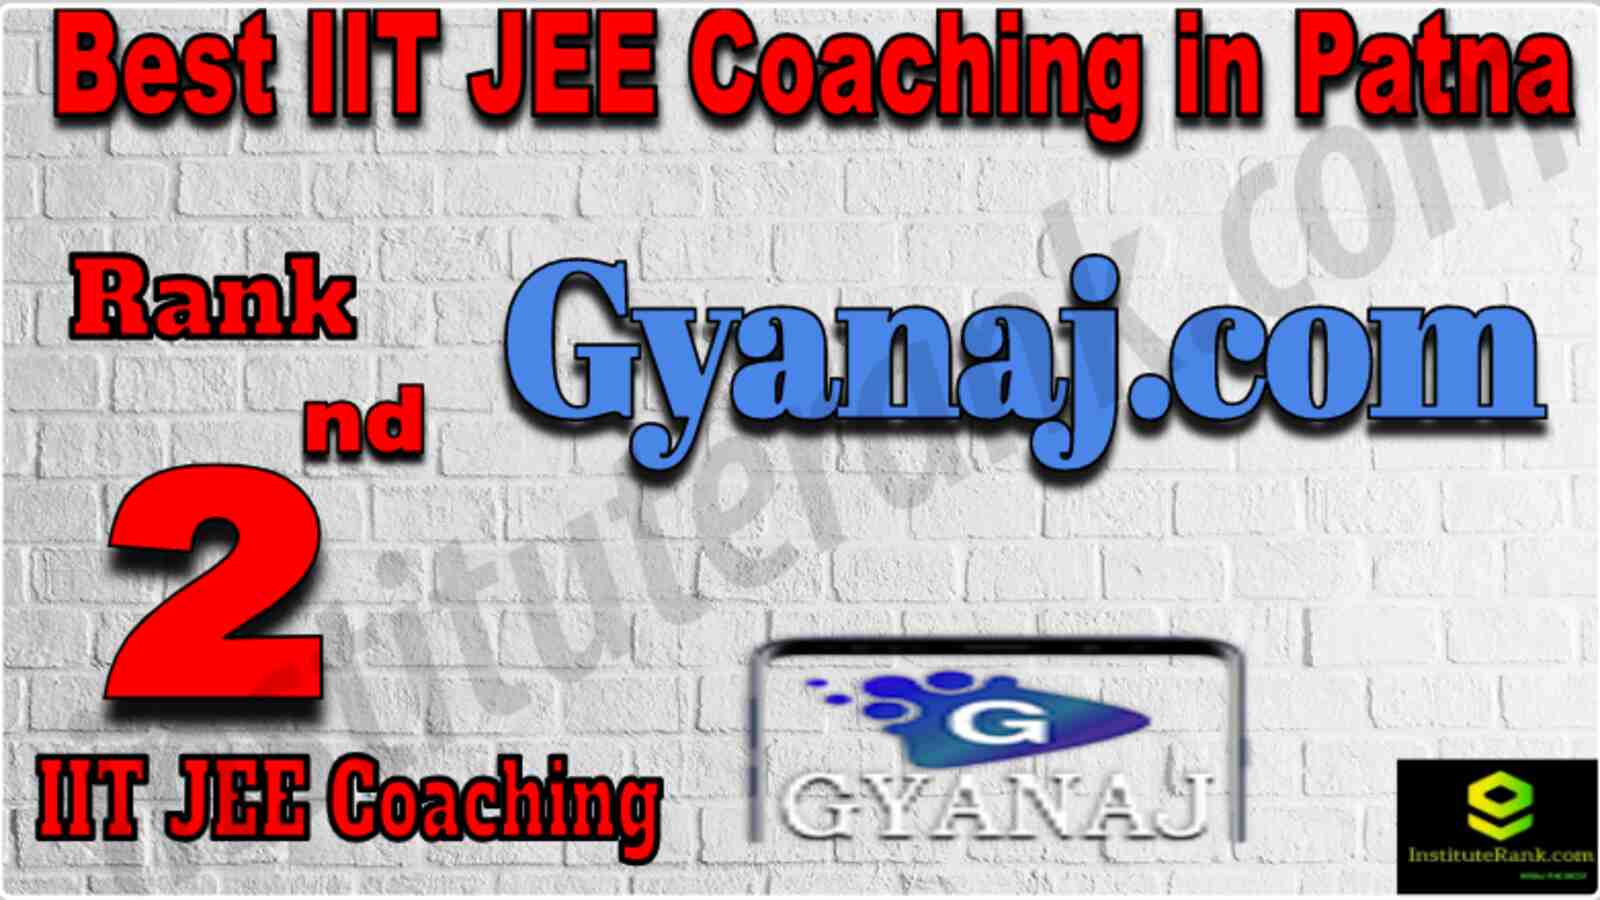 Rank 2 Best IIT JEE Coaching in Patna